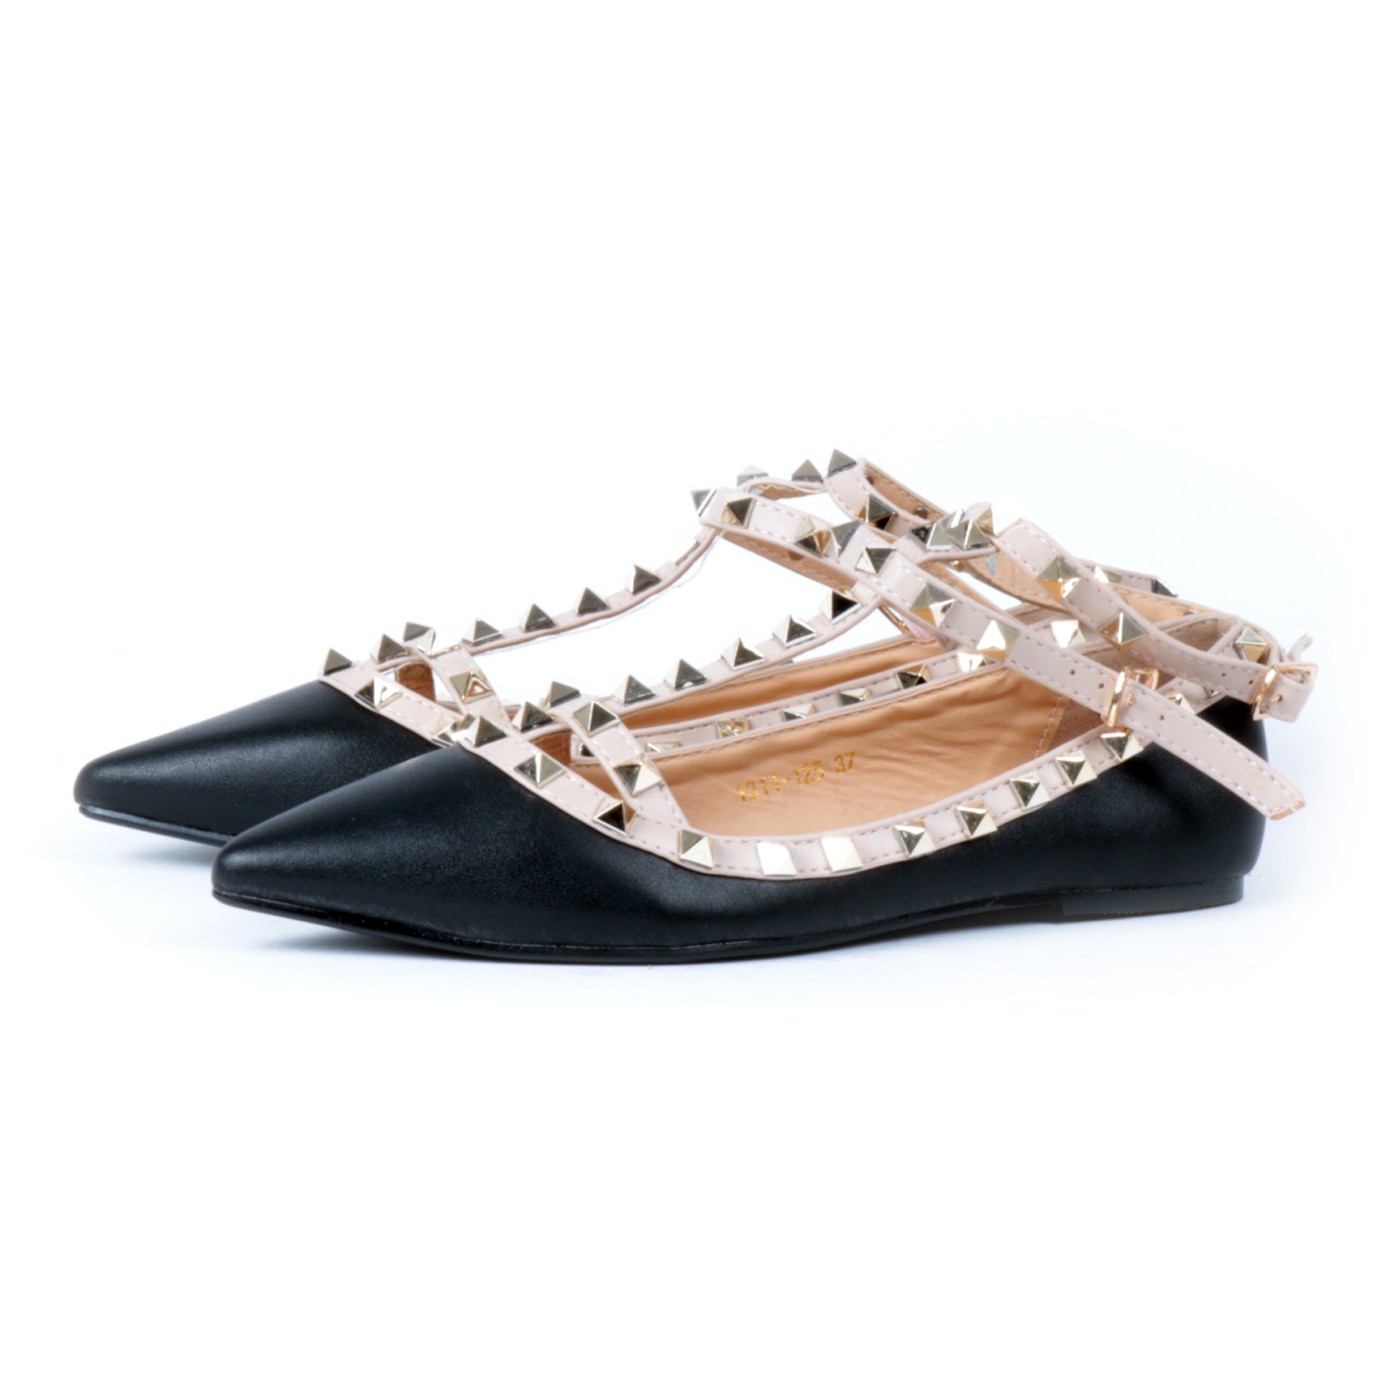 Franco Roma – Ballerine a punta con borchie e cinturino alla caviglia -  Beige, Bianco, Nero, Rosso - MitShopping - Abbigliamento e scarpe